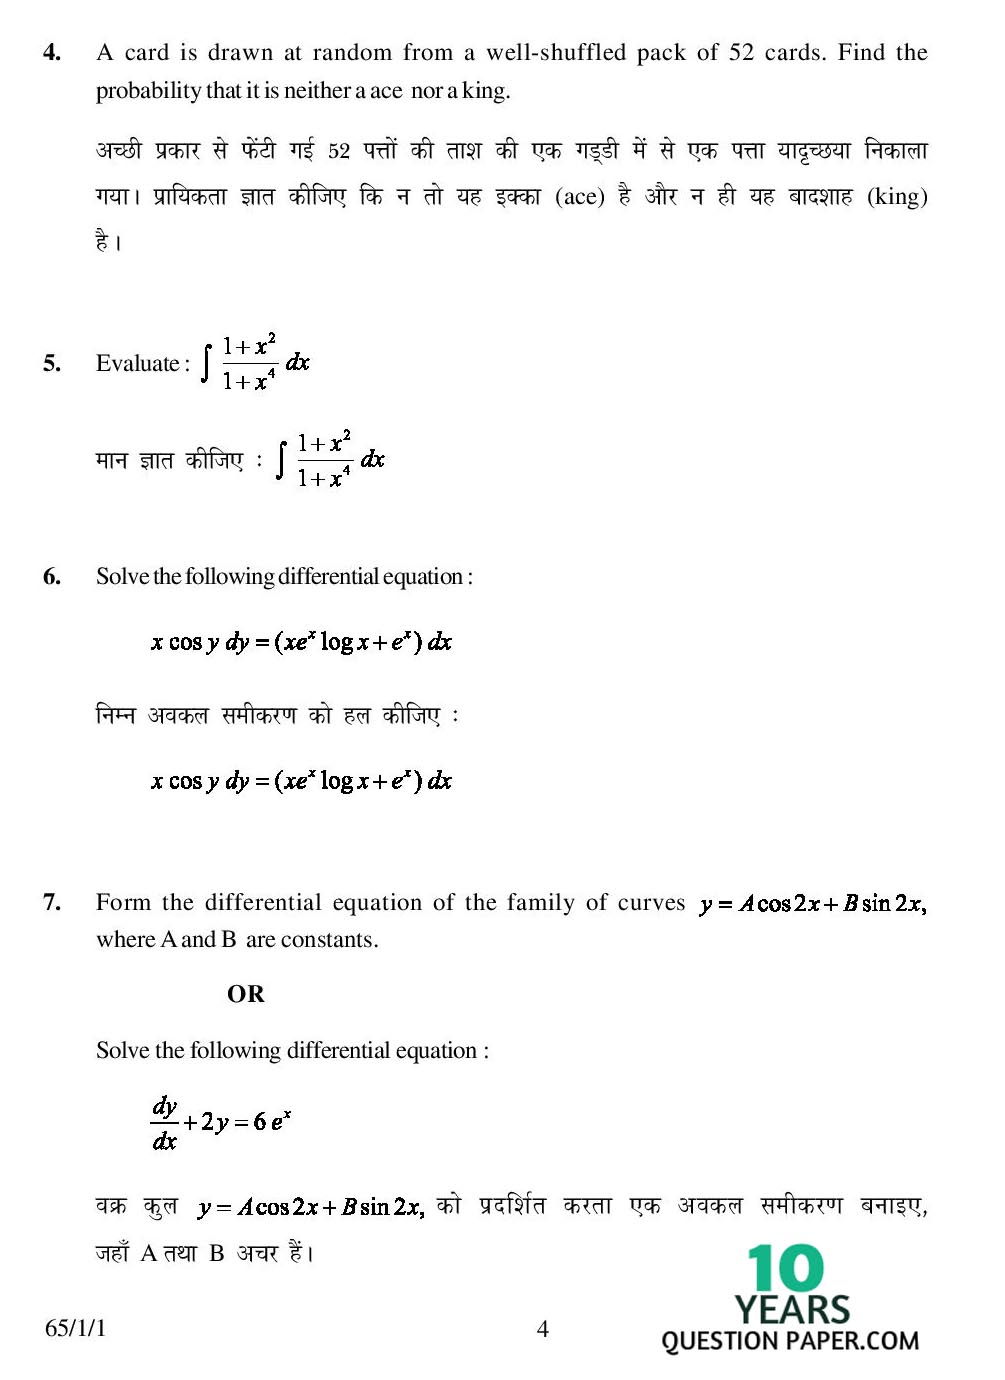 CBSE Class 12 Mathematics 2007 Question Paper